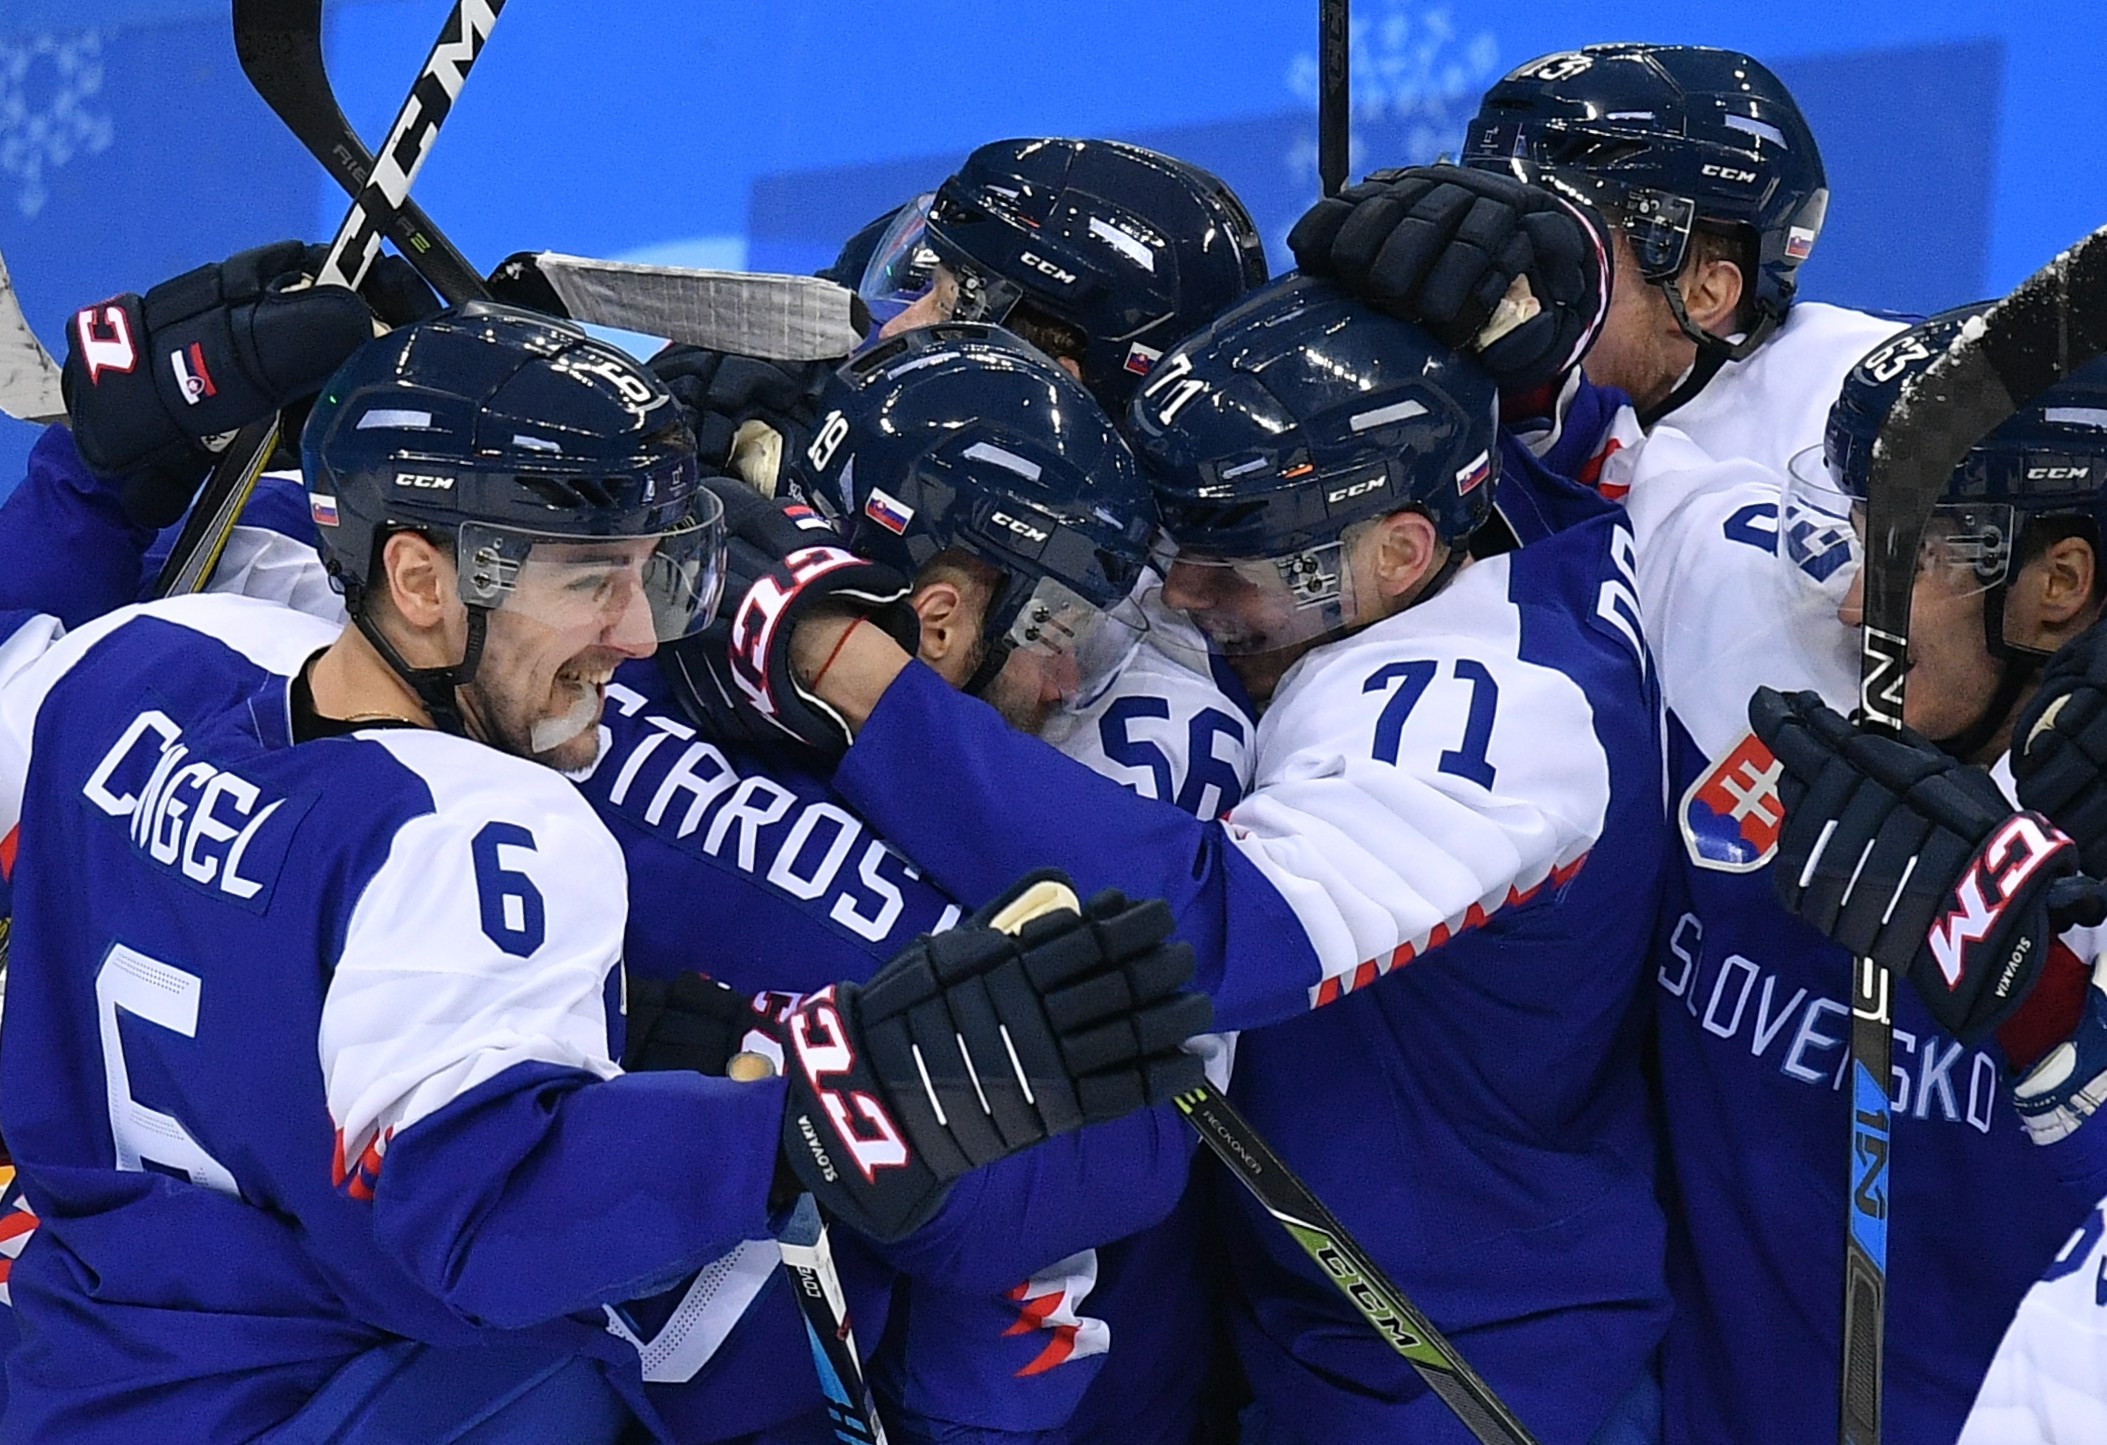 Сборная Словакии по хоккею празднует победу над россиянами (3:2). Фото: © РИА Новости/Владимир Песня